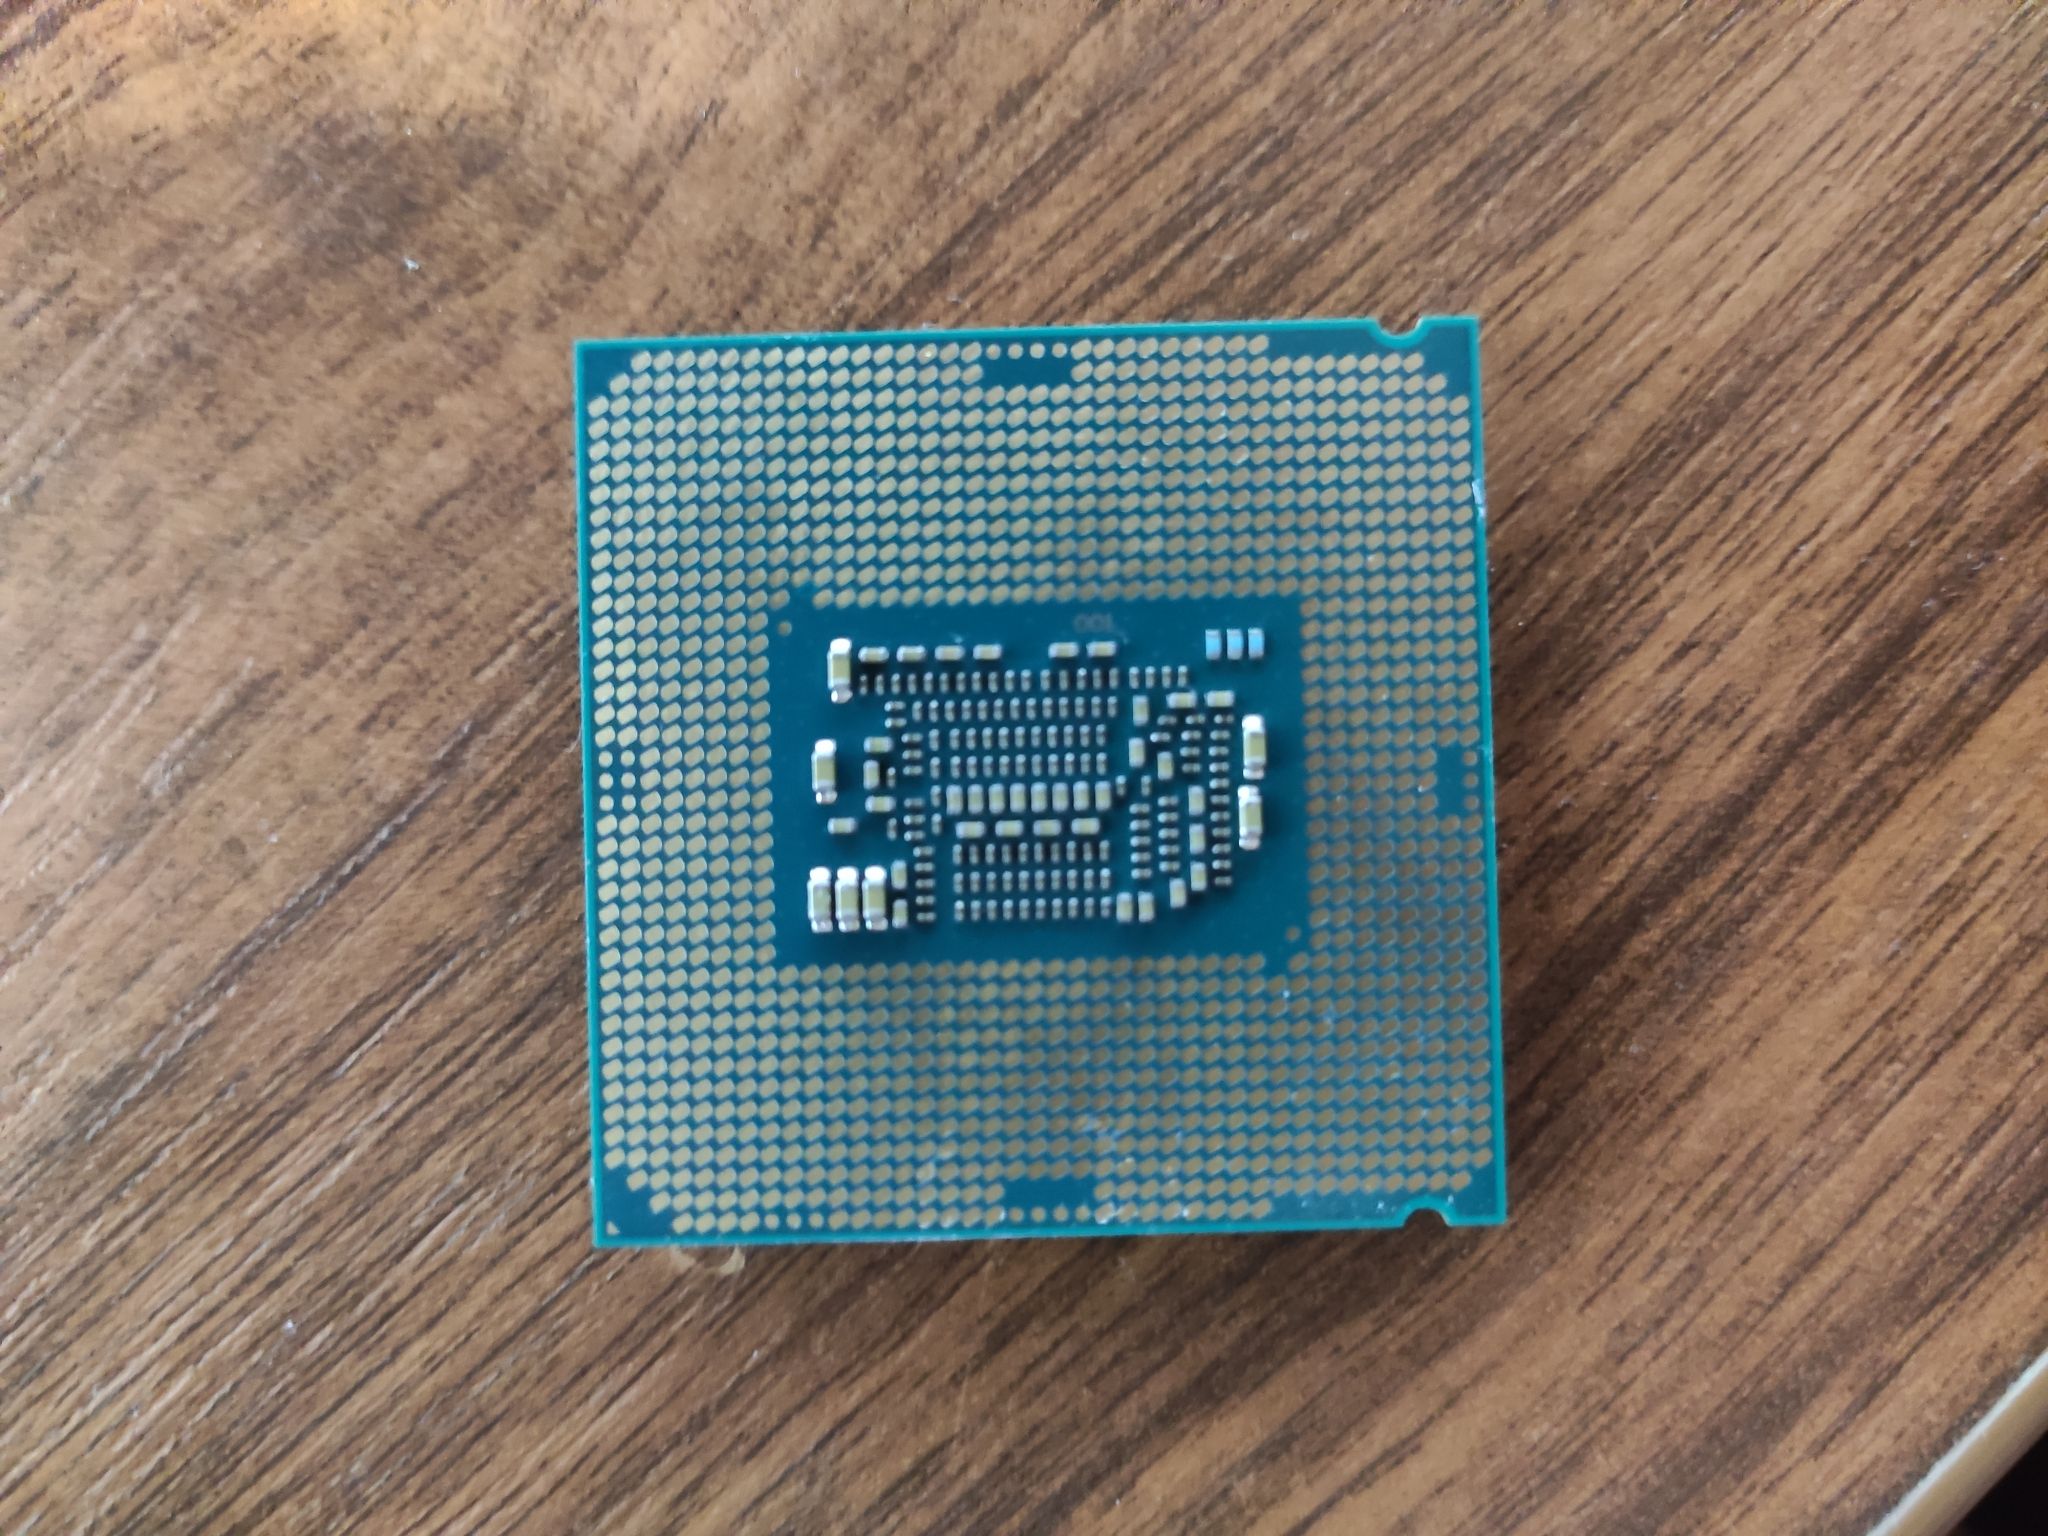 Интел core i3